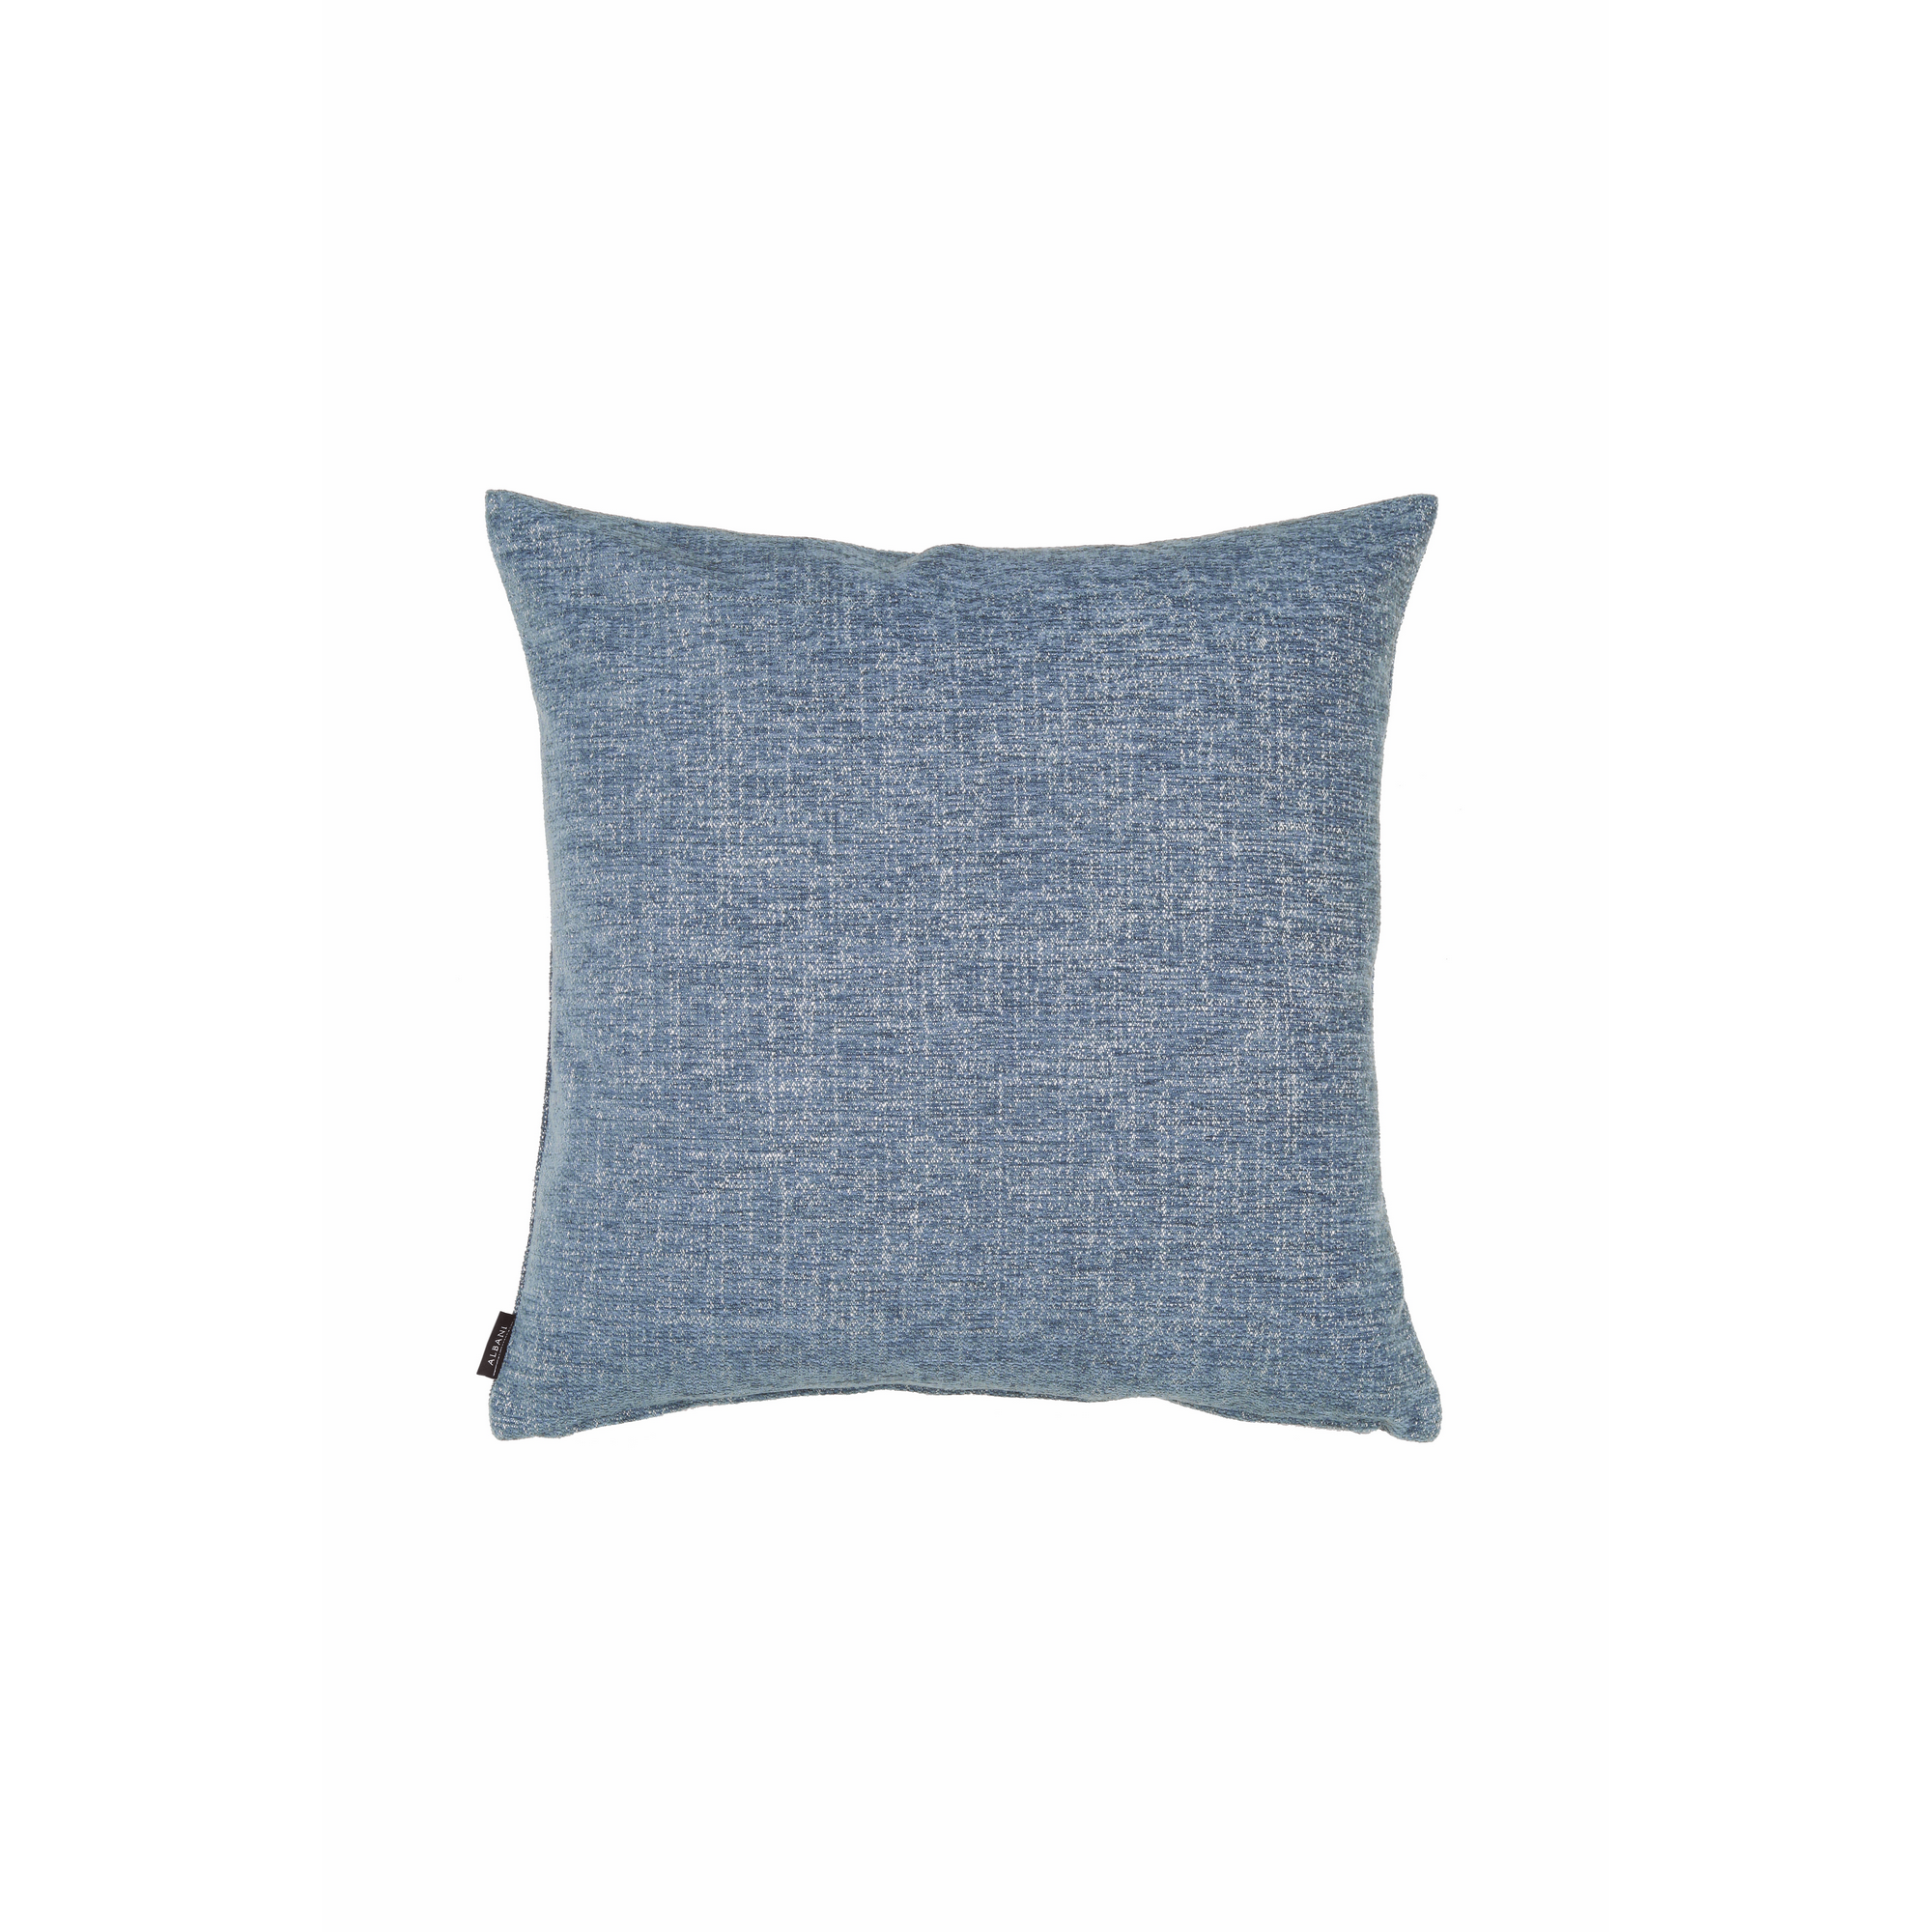 Kissenhülle ohne Füllung 'Clemente' jeansblau 50 x 50 cm + product picture